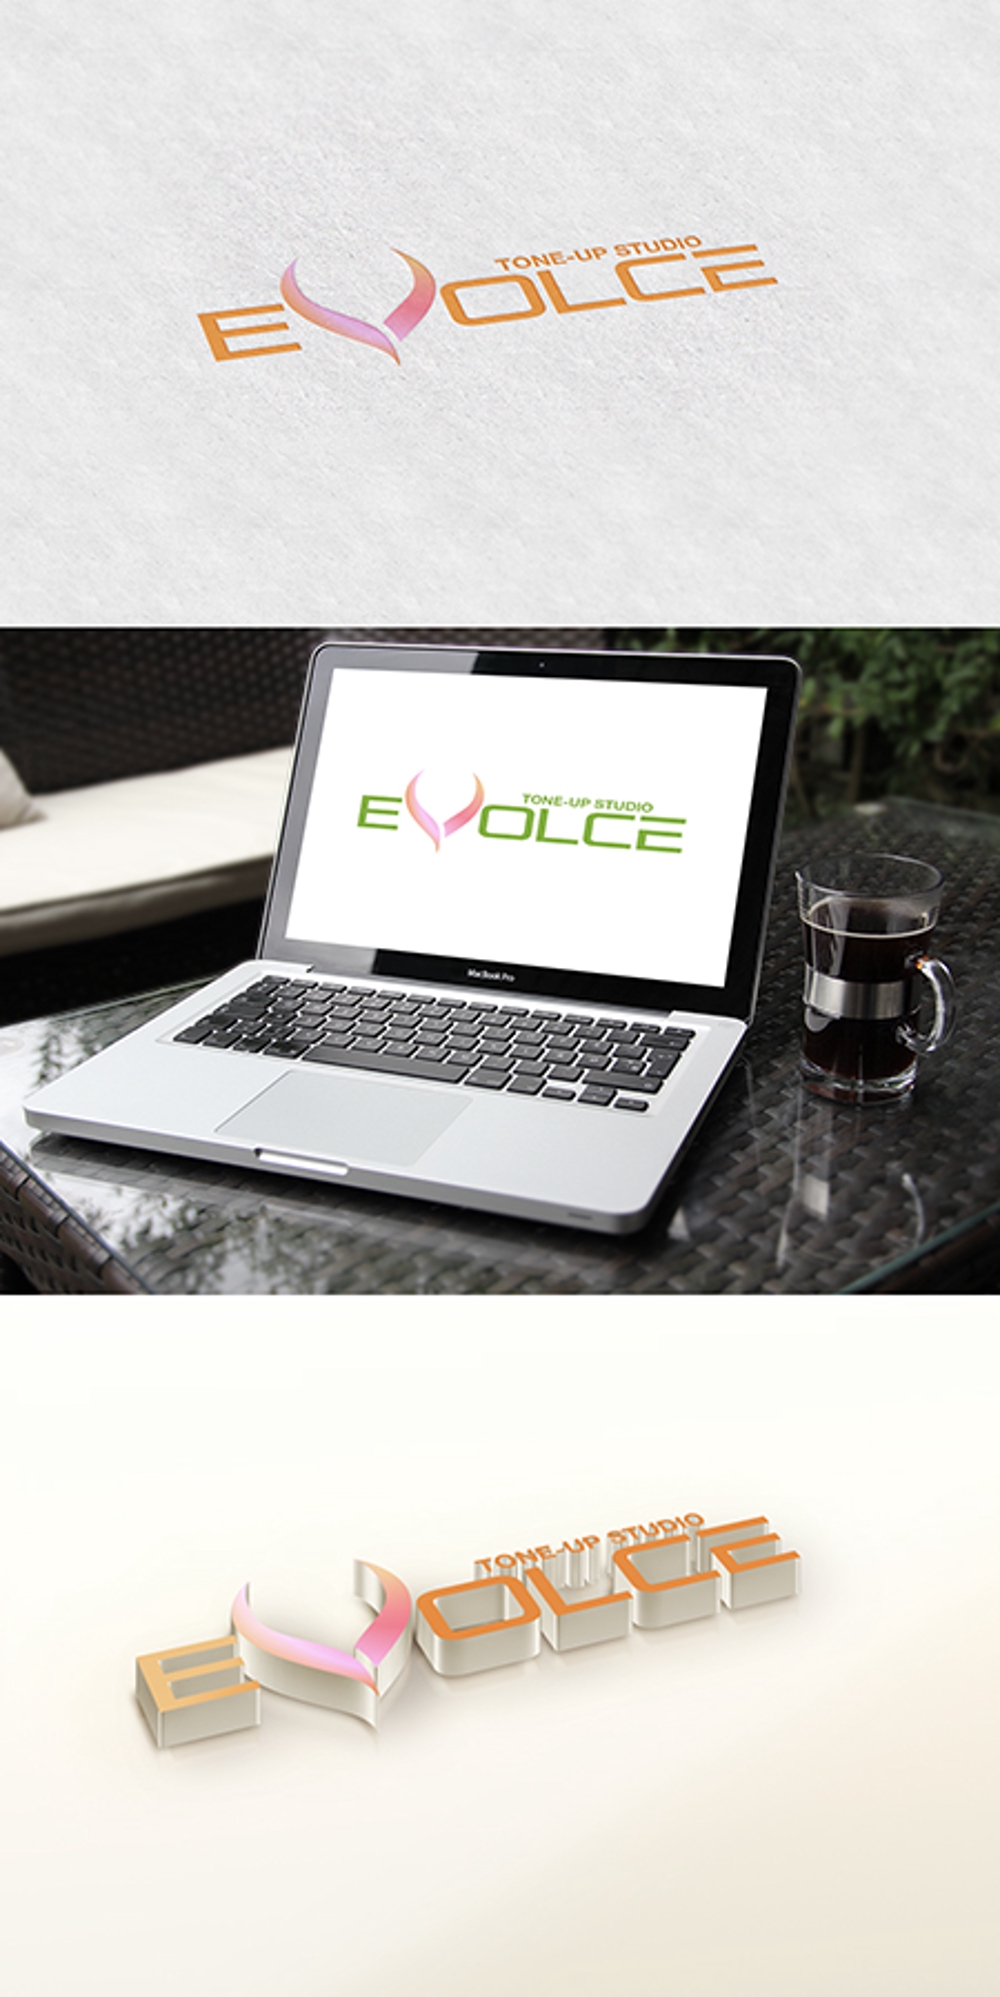 コンデイショニングスタジオ「EVOLCE(エボルス)」のロゴ